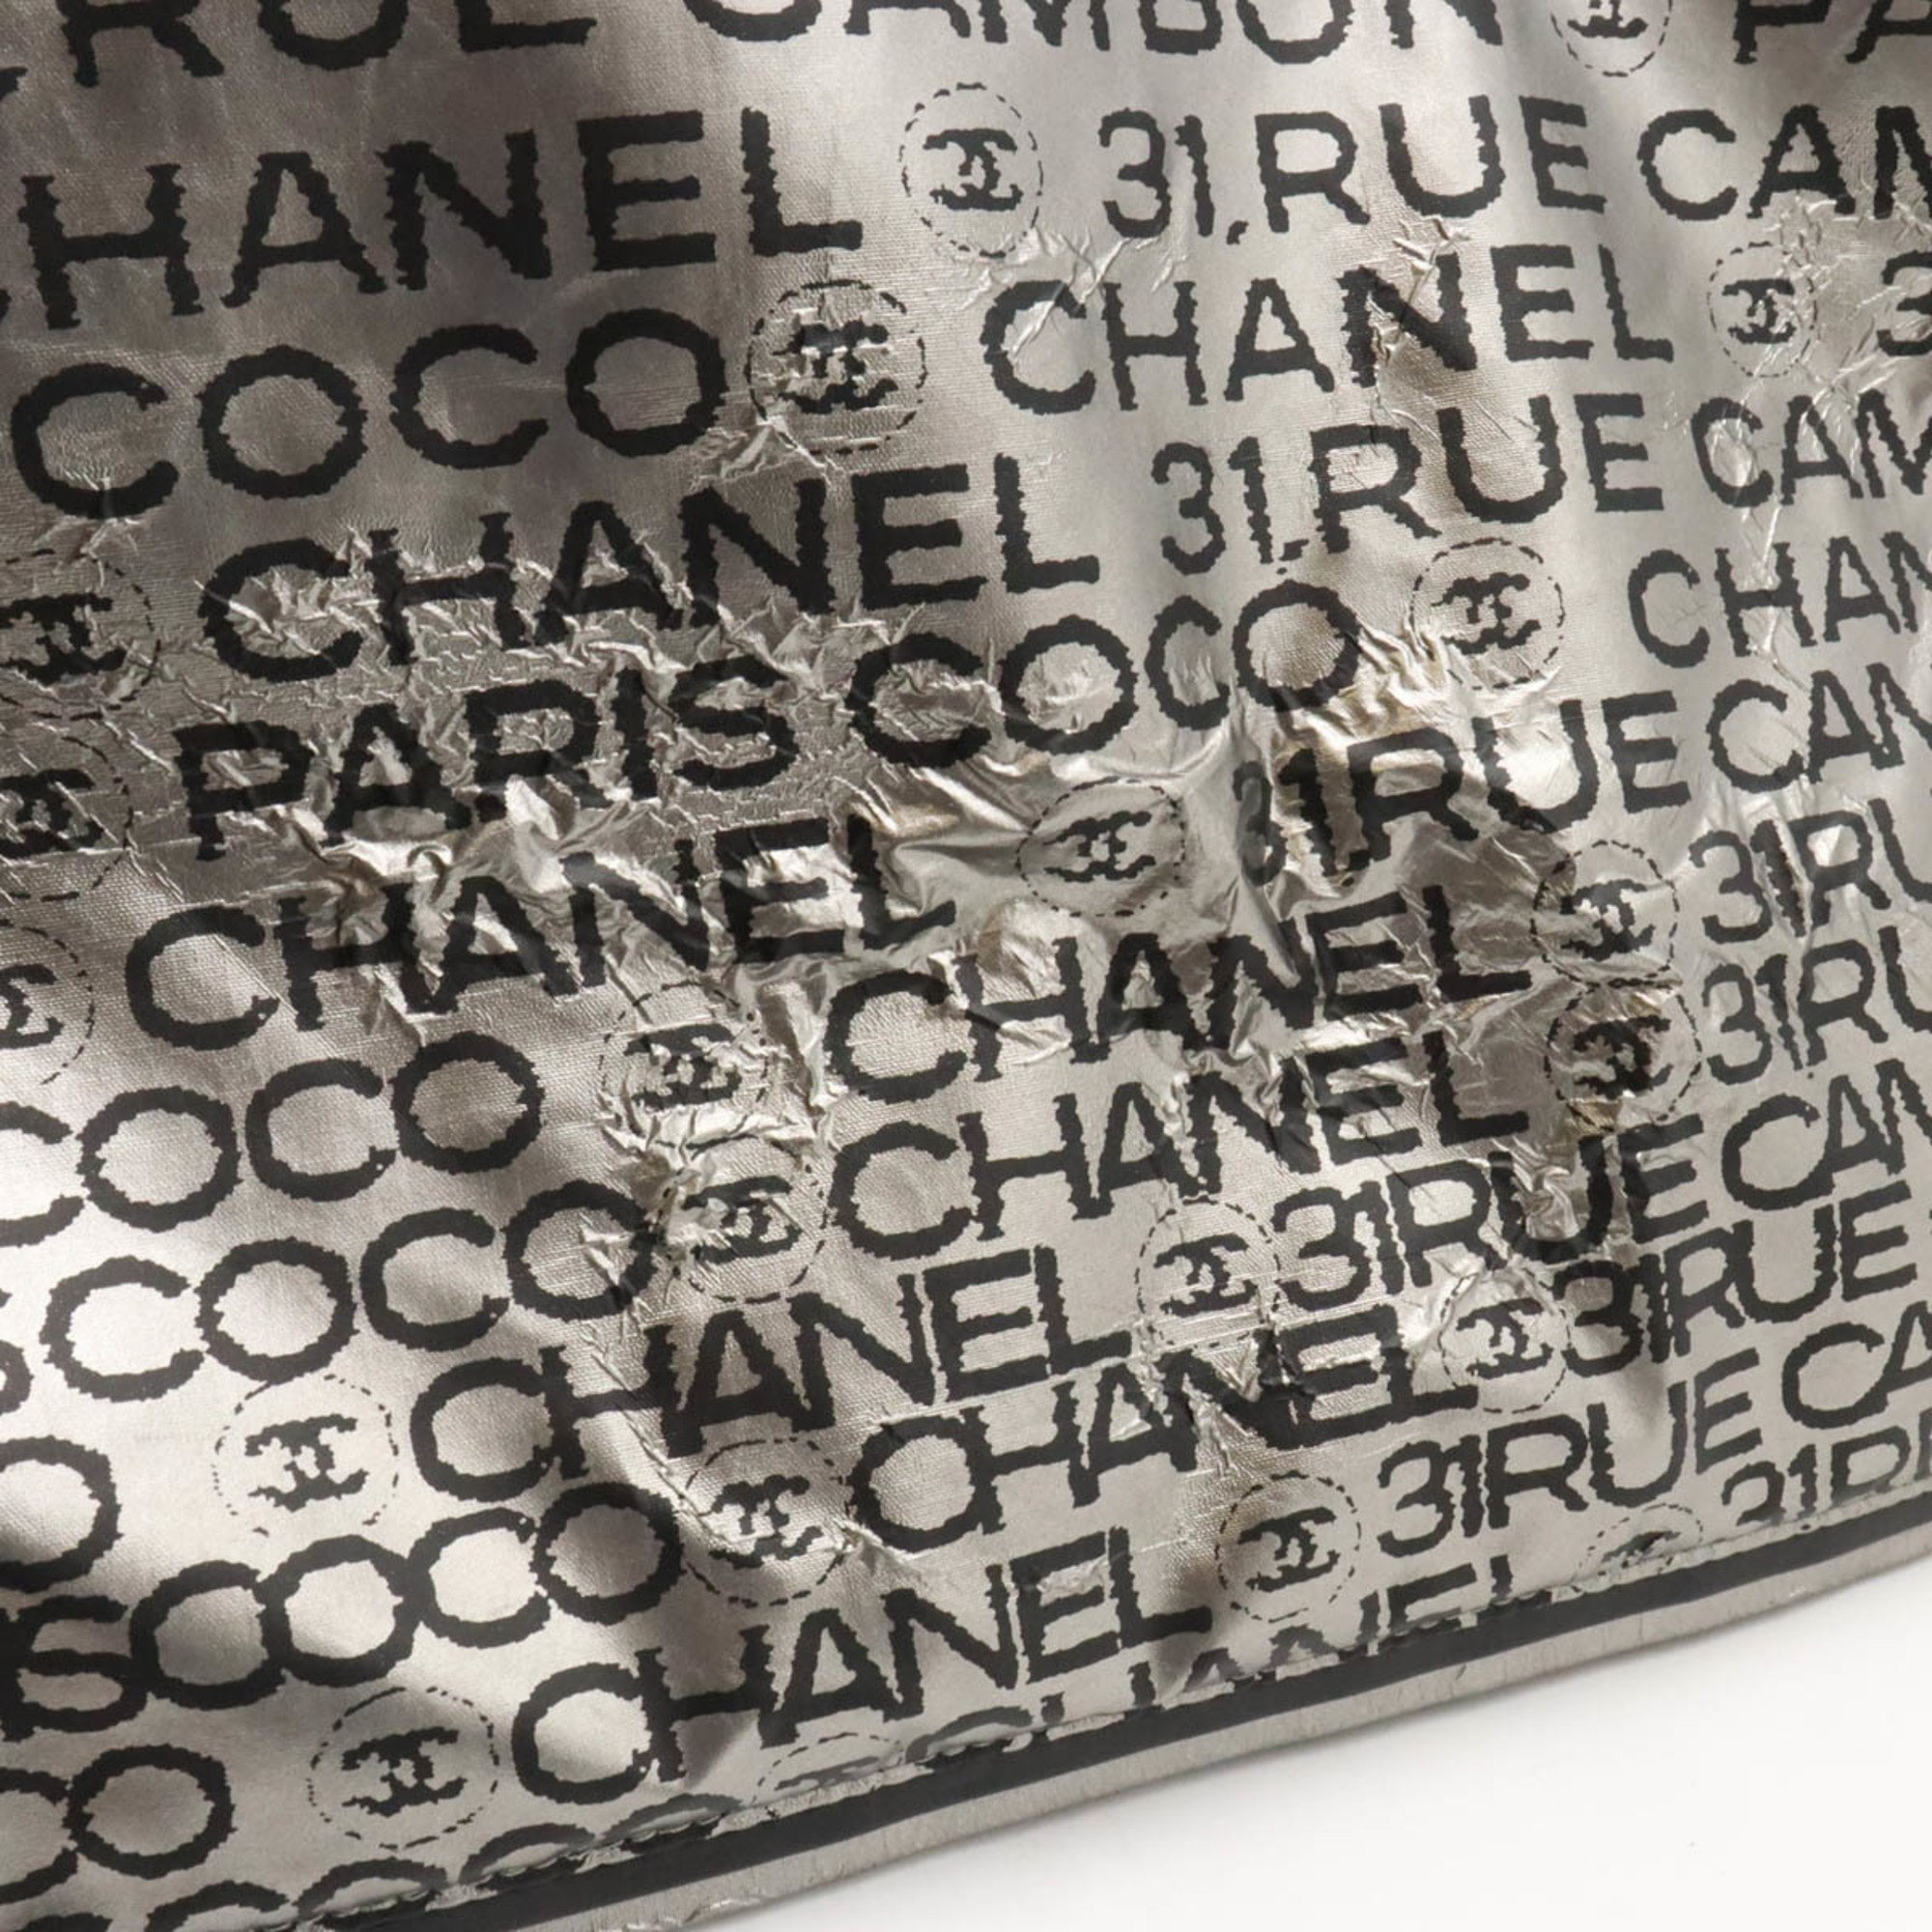 CHANEL Unlimited Tote Bag Large Shoulder Nylon Silver 6113